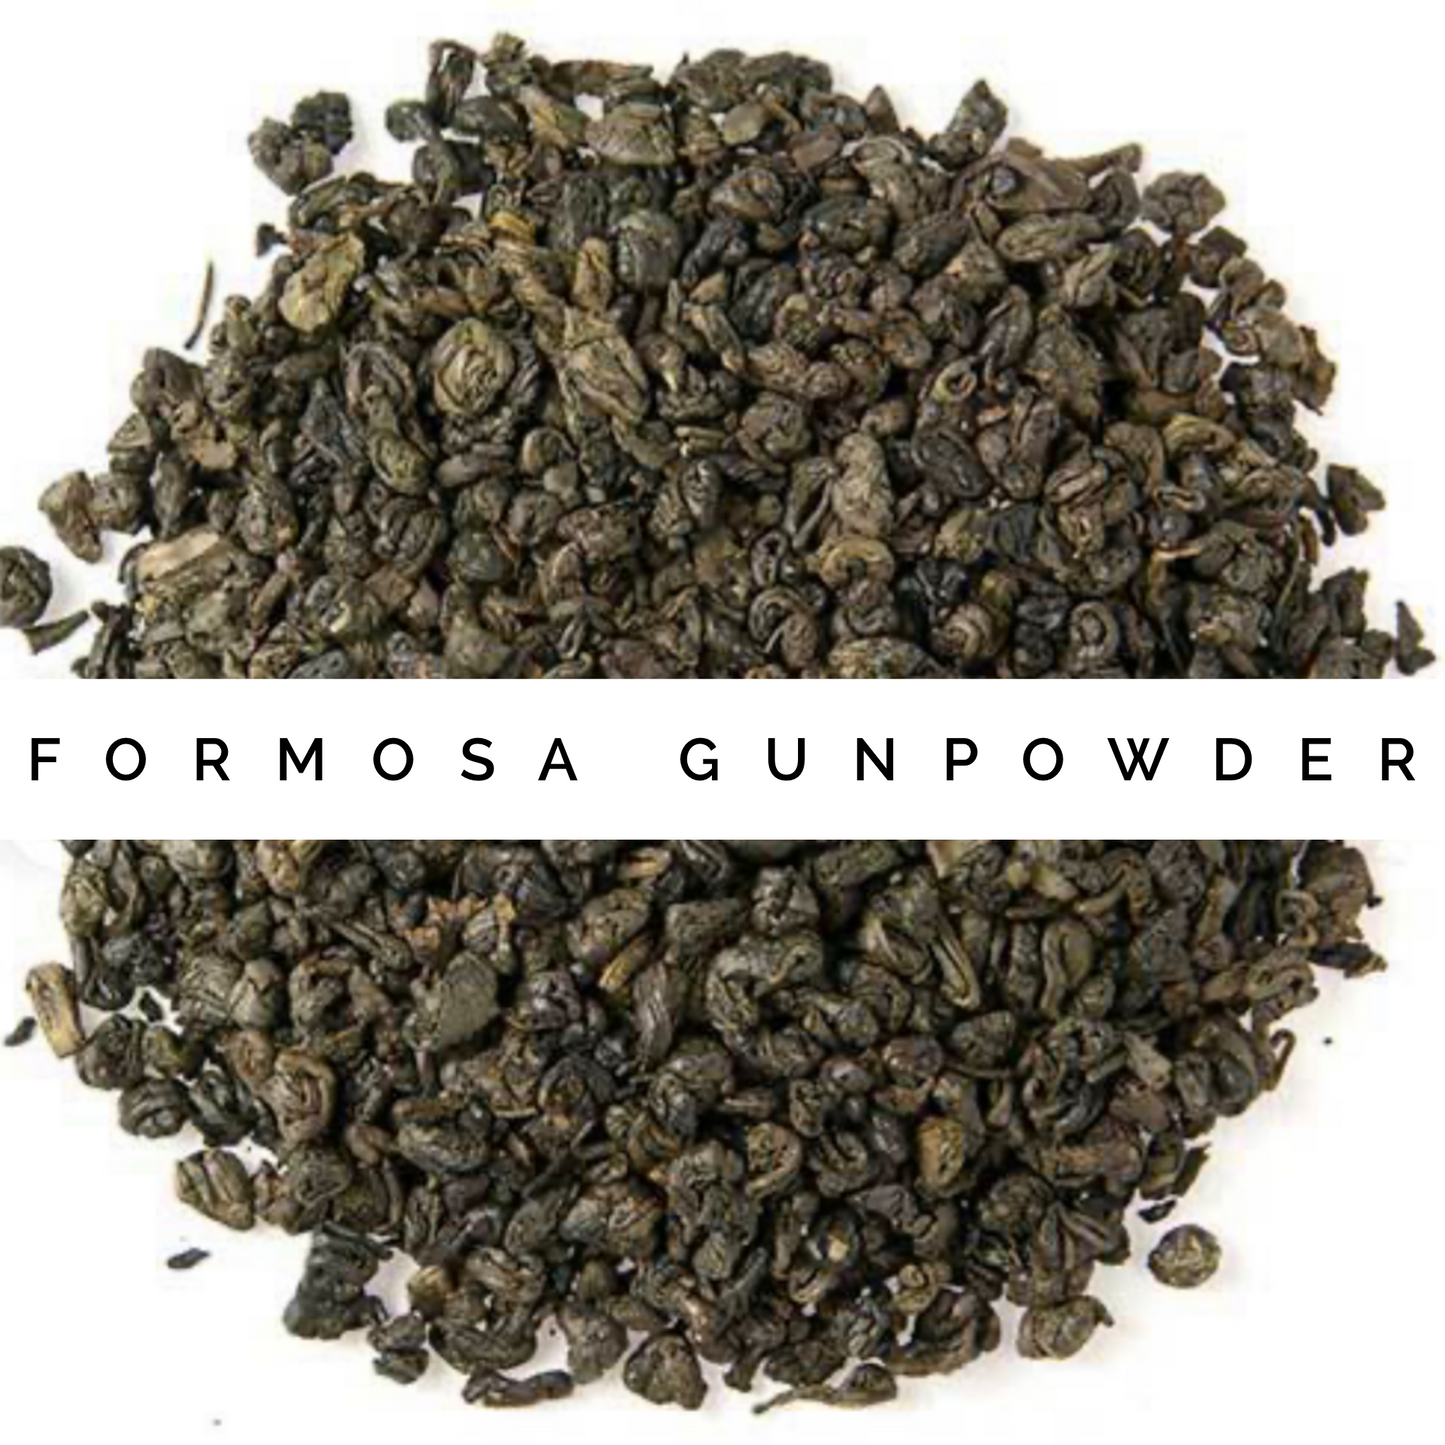 Formosa Gunpowder